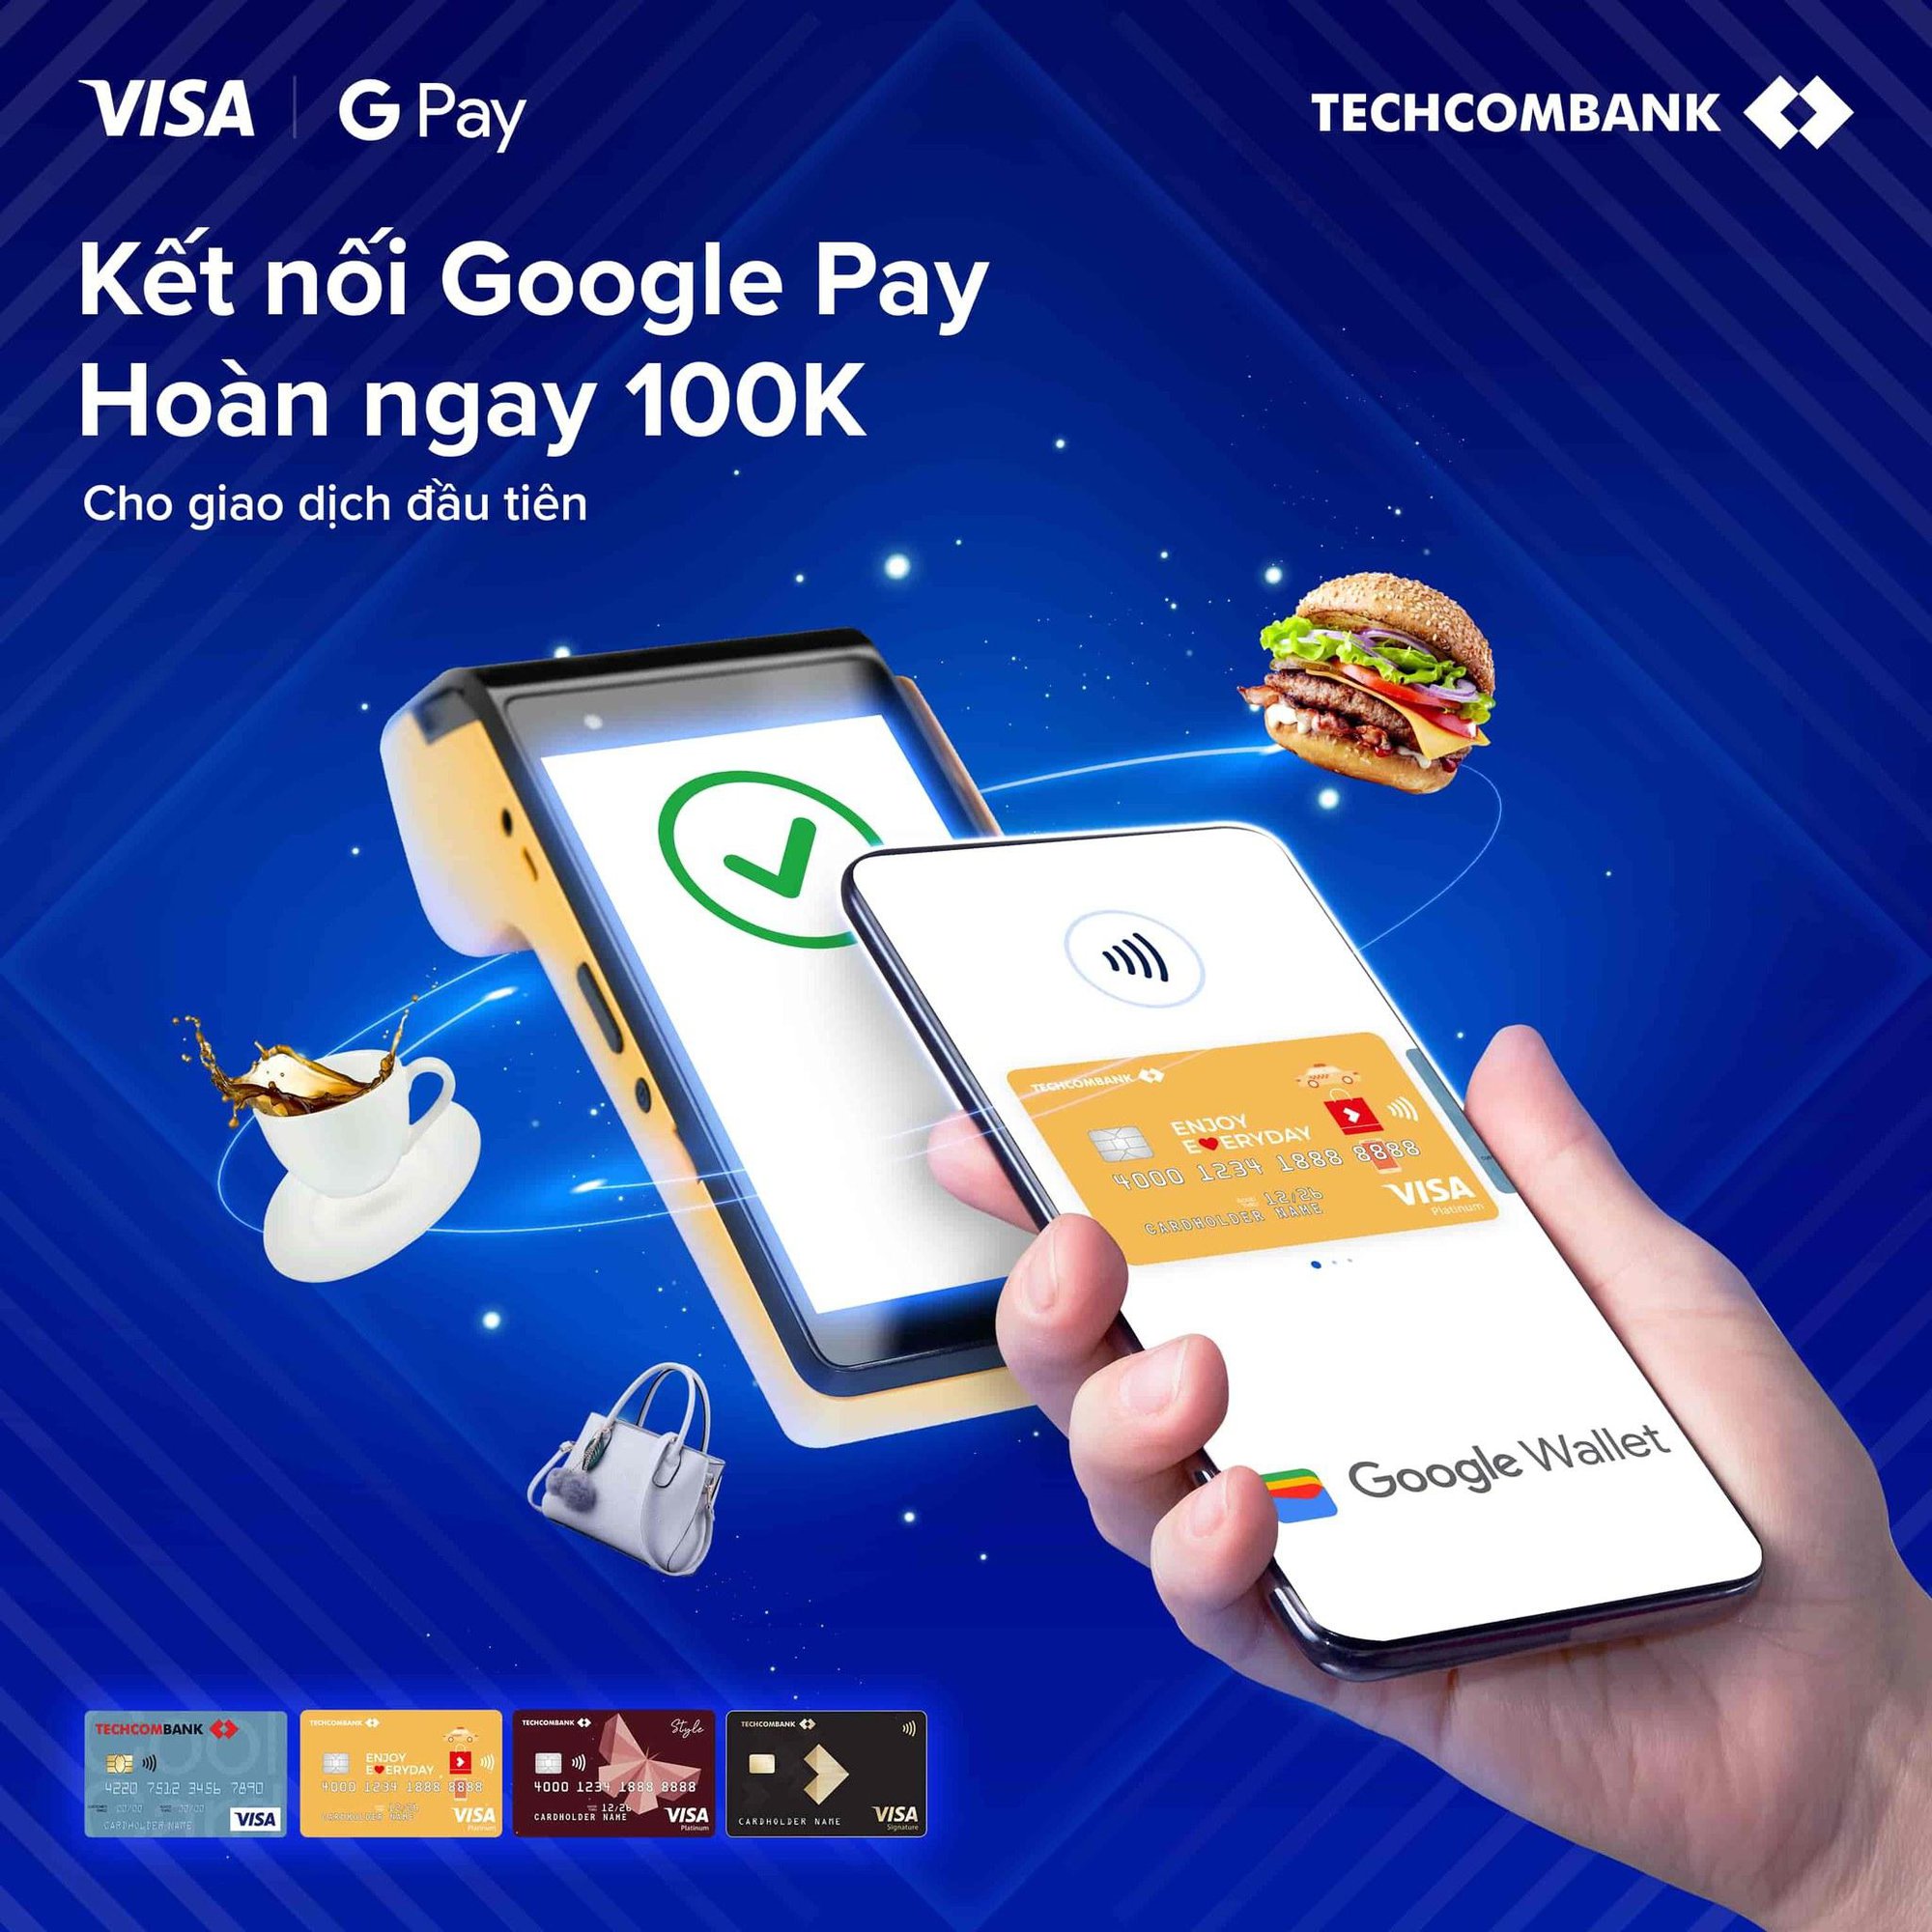 Tín đồ thanh toán số nhận ngay 100k vào thẻ tín dụng Techcombank Visa khi giao dịch tại Google Pay - Ảnh 4.